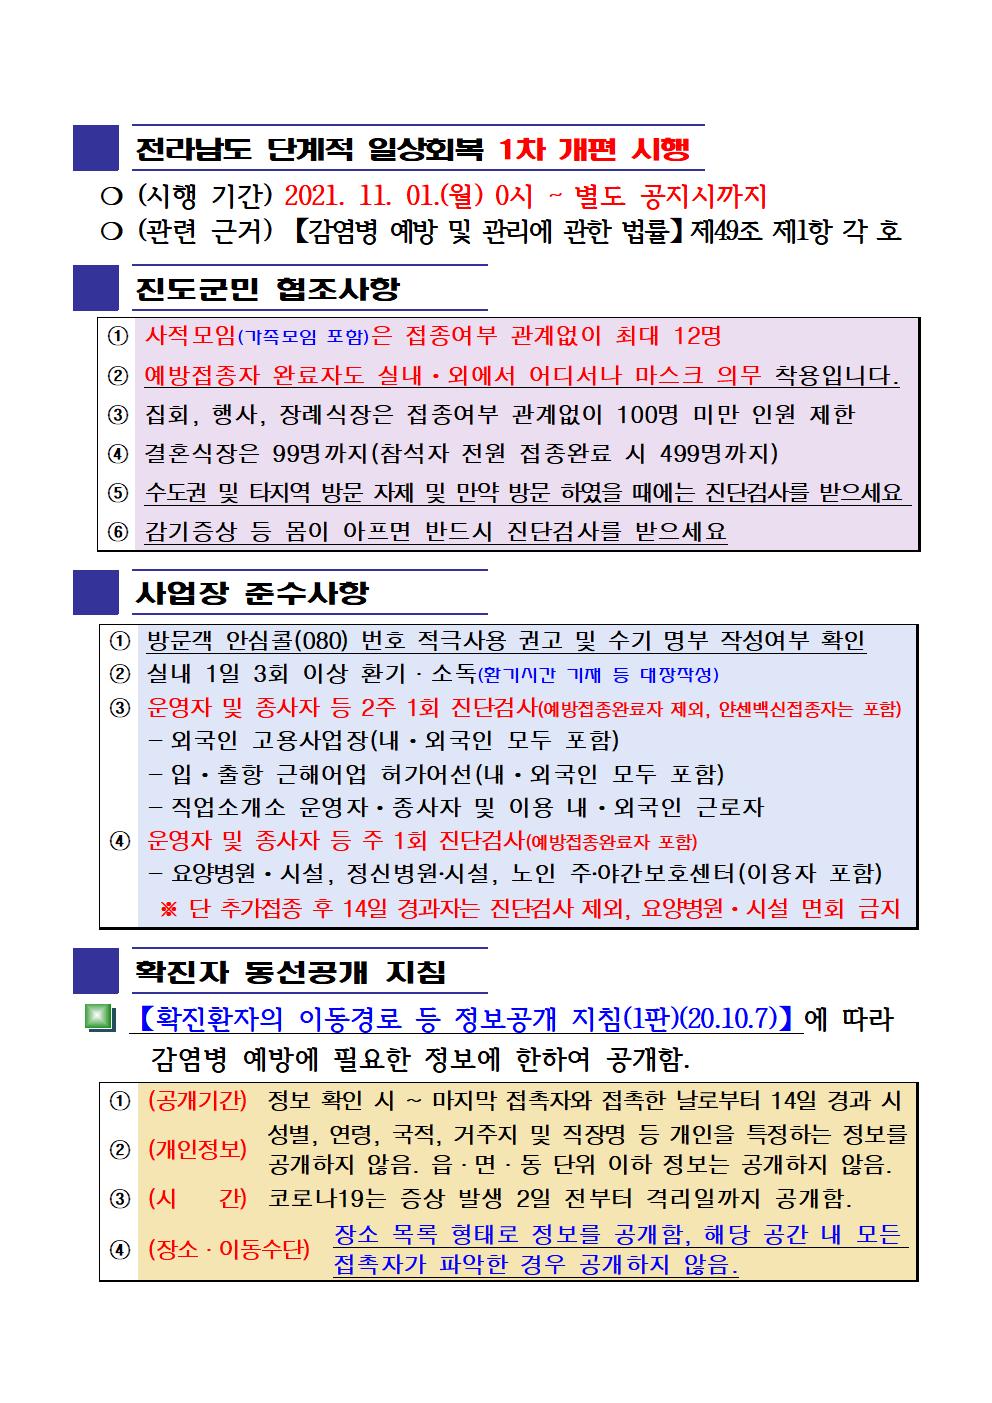 2021년 코로나 19 대응 일일상황보고(11월 26일 24시 기준) 첨부#2